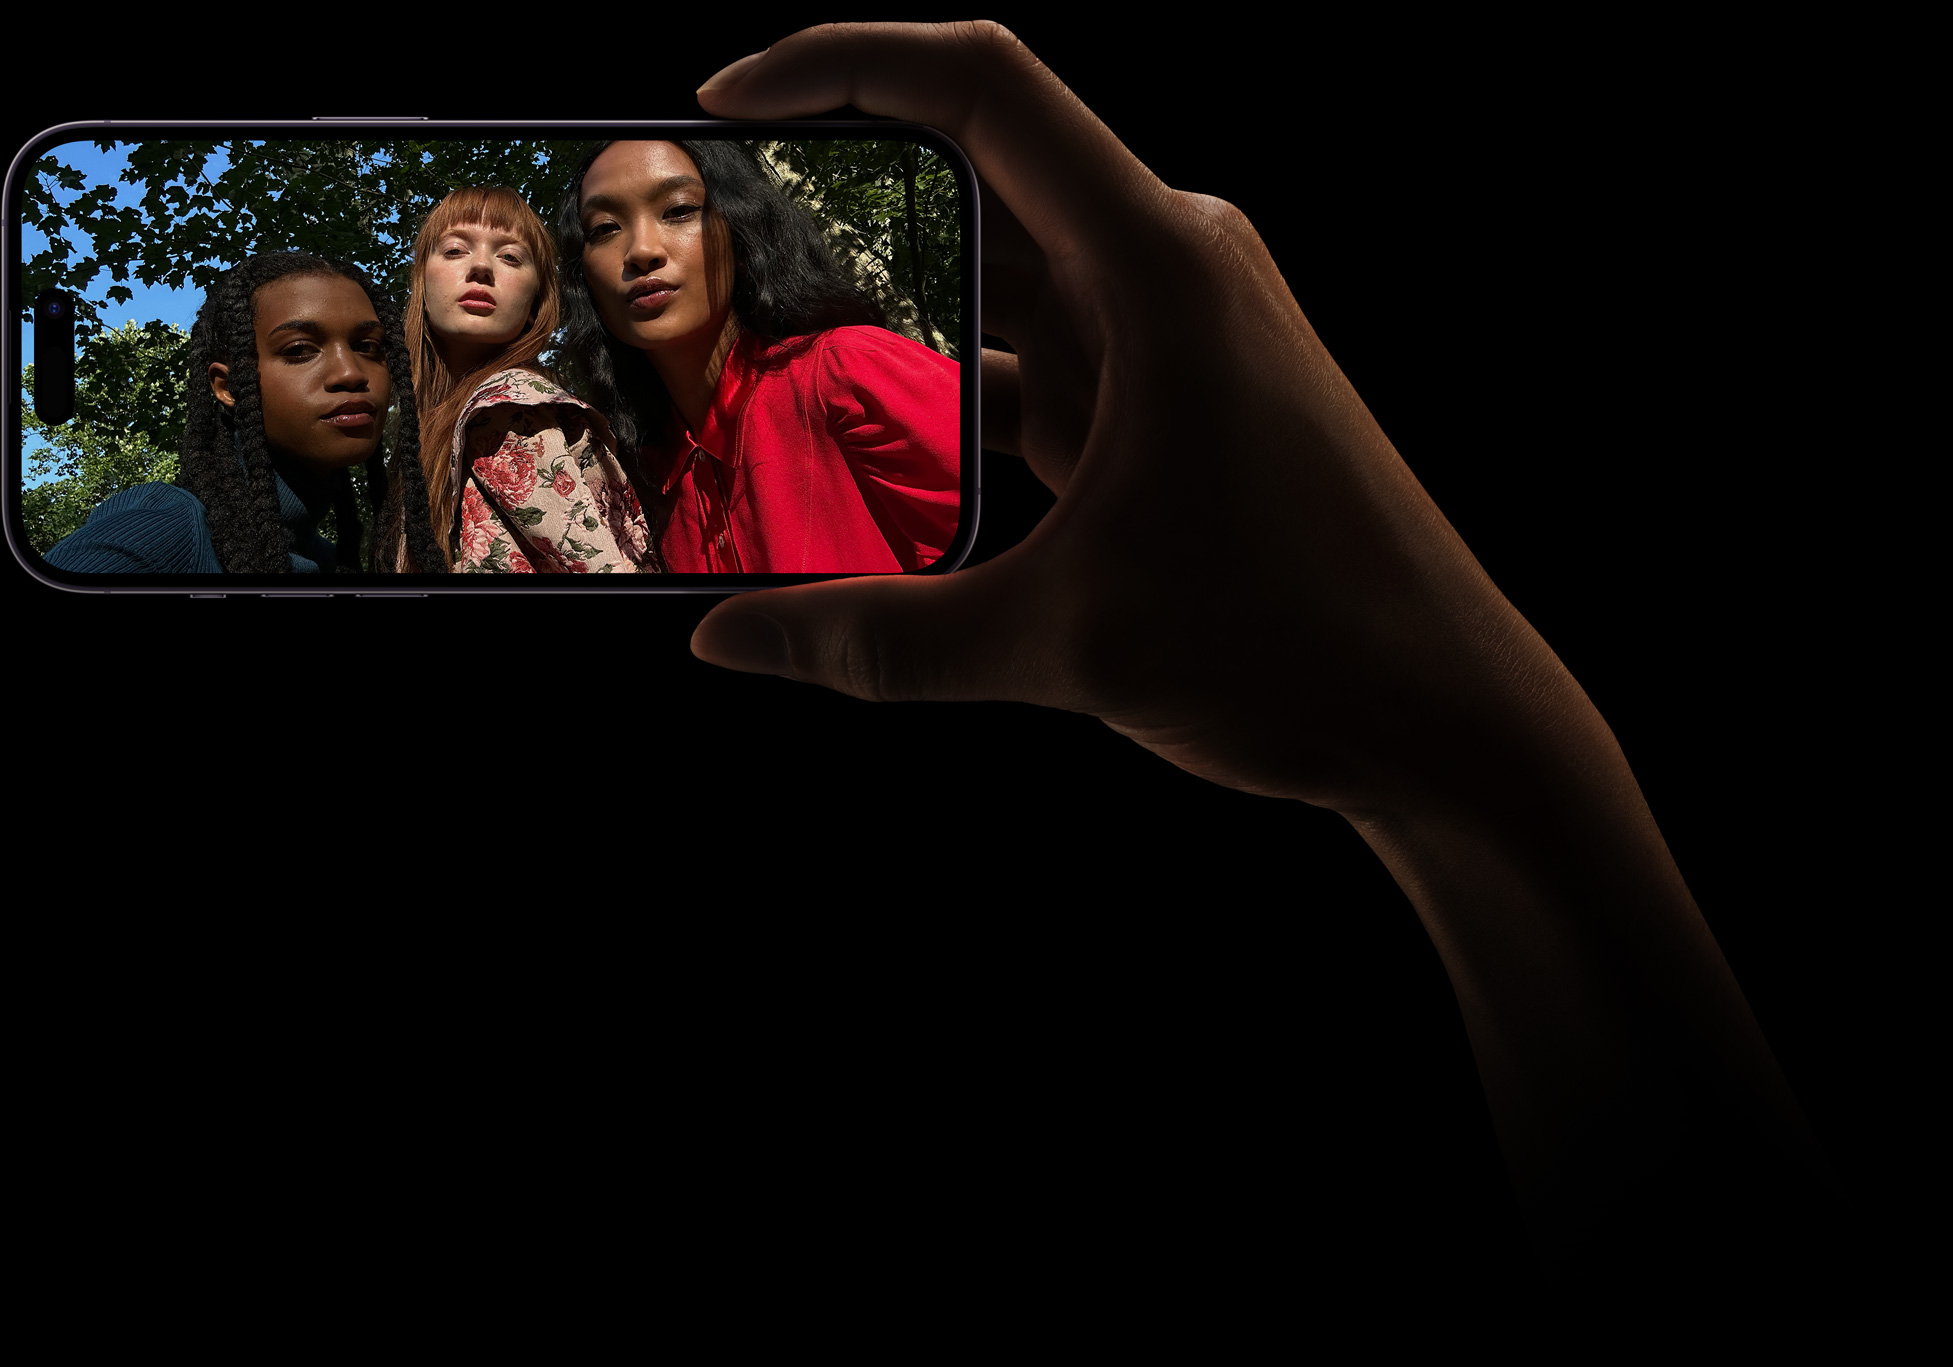 Három együtt pózoló nő közös szelfije, melyet a TrueDepth kamerával fényképeztek.